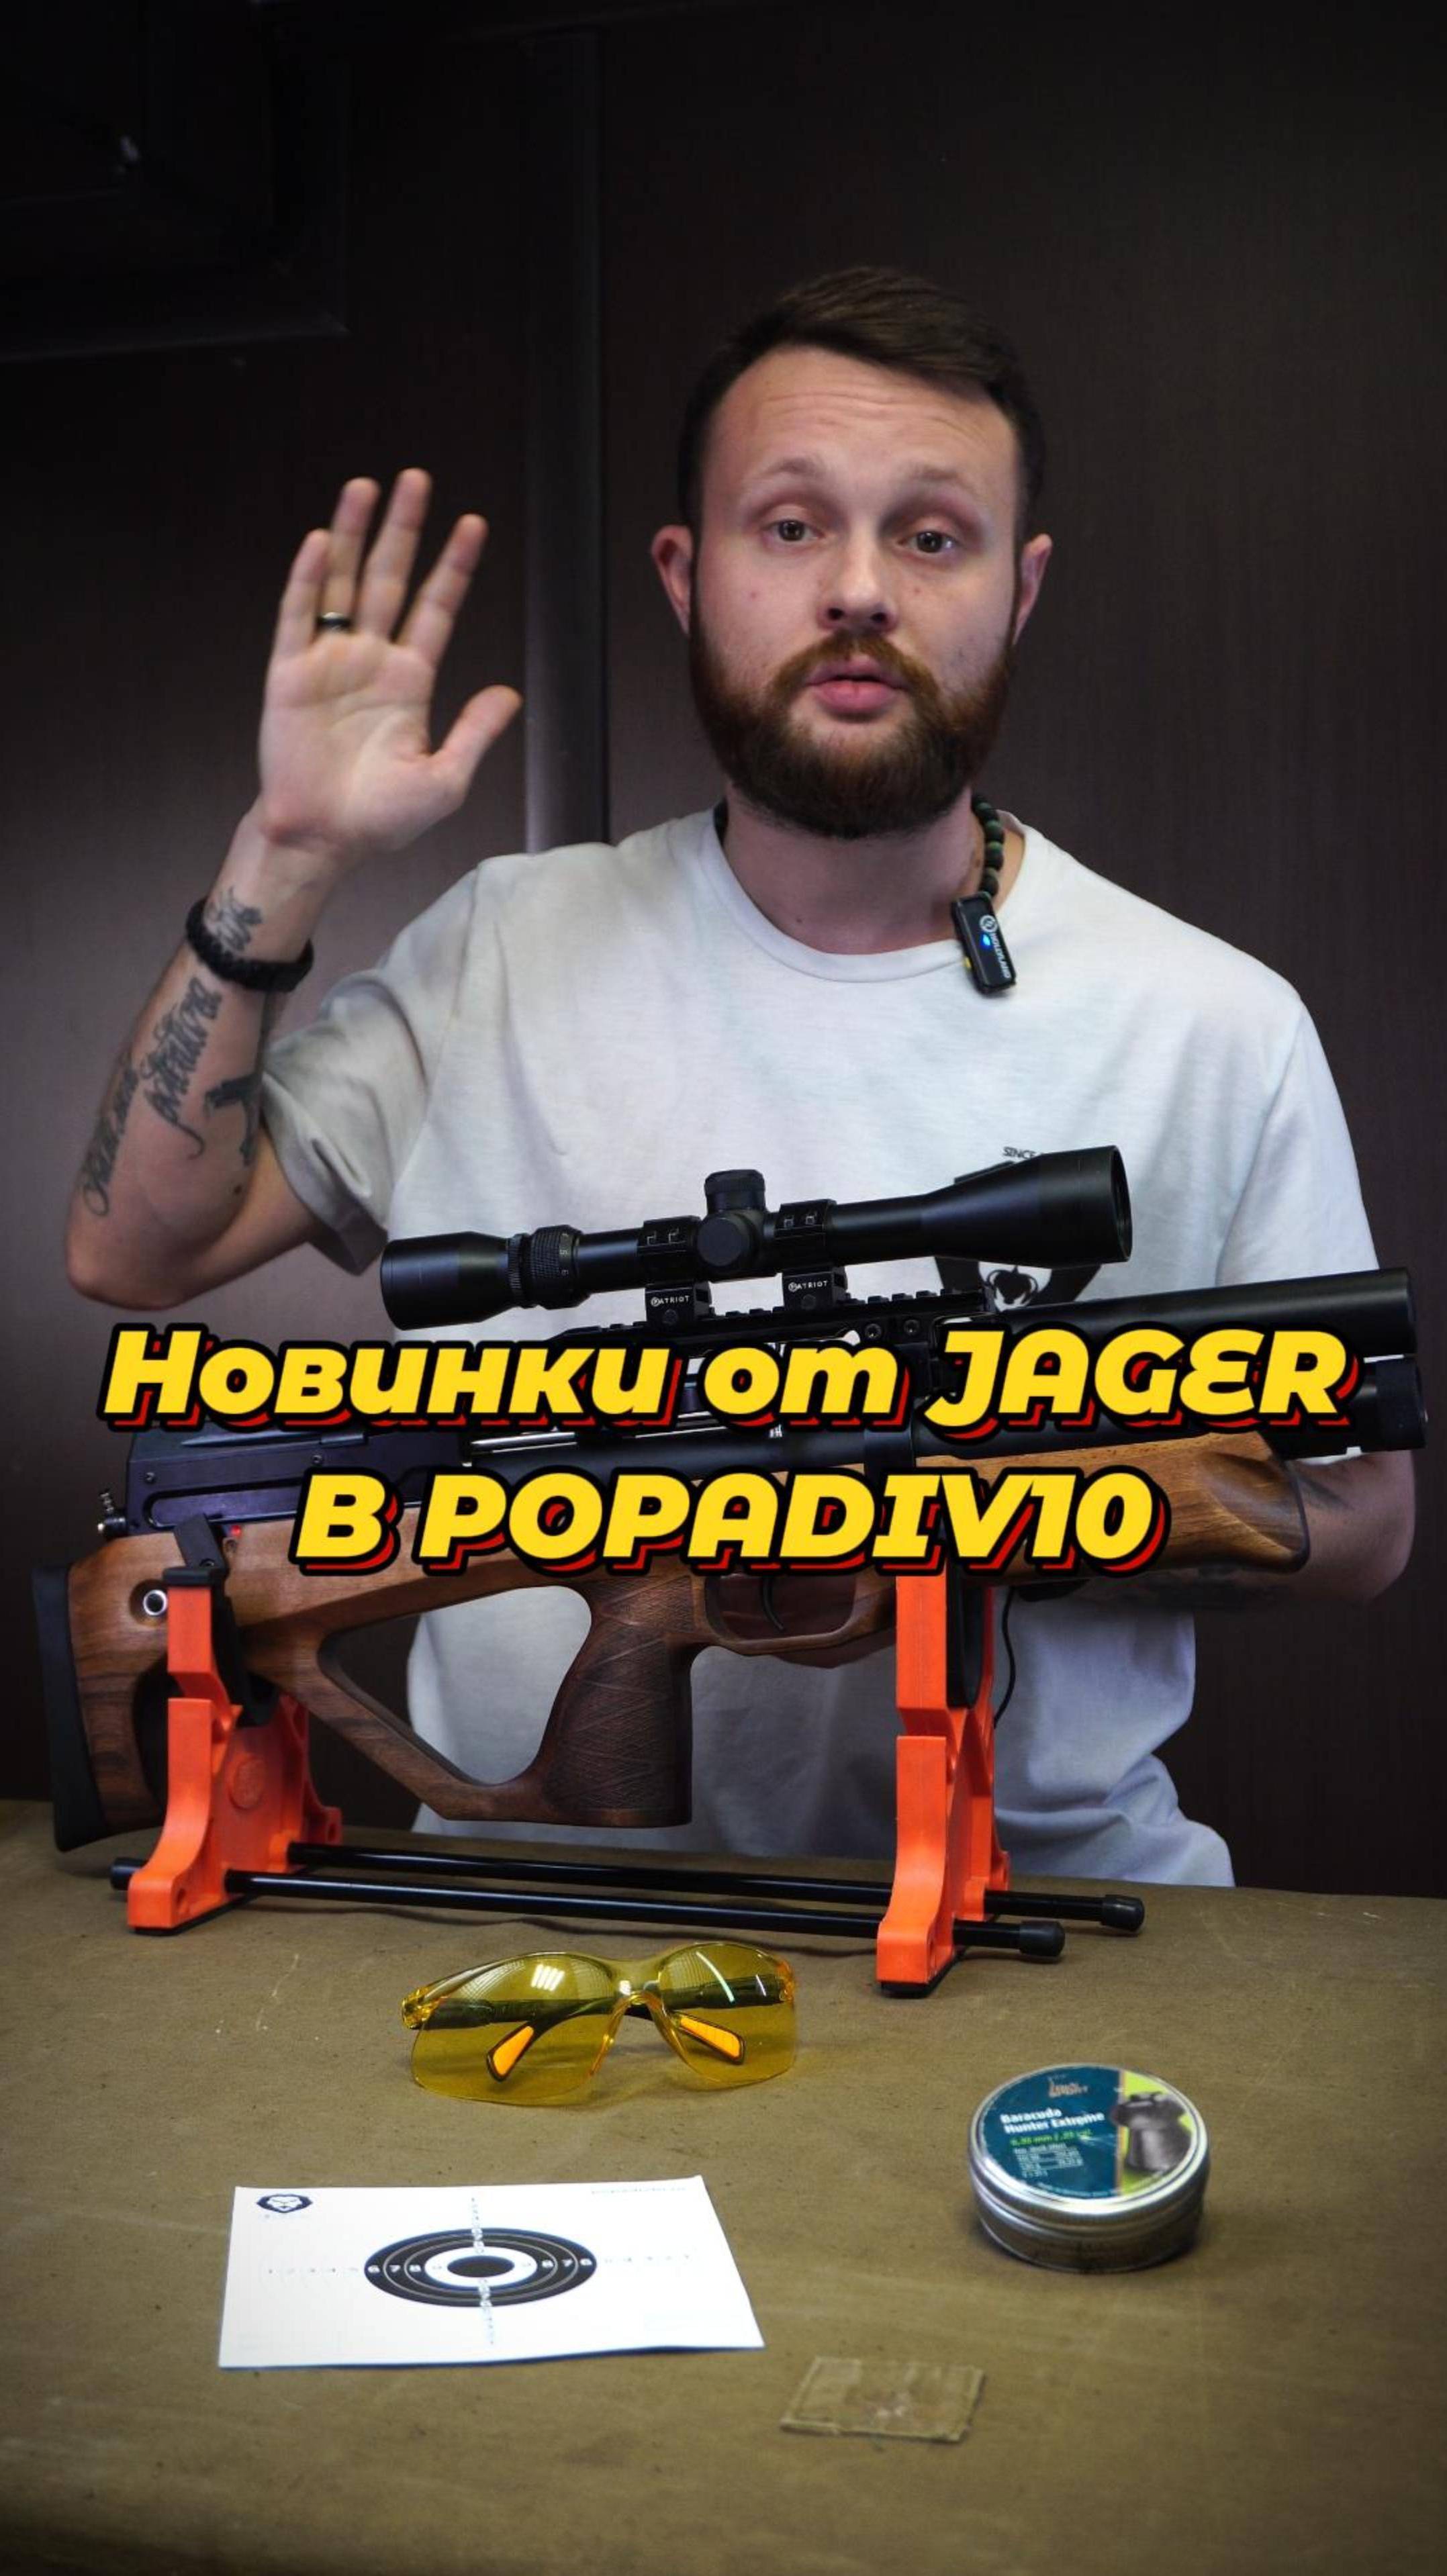 Новинки от Jaeger в PopadiV10